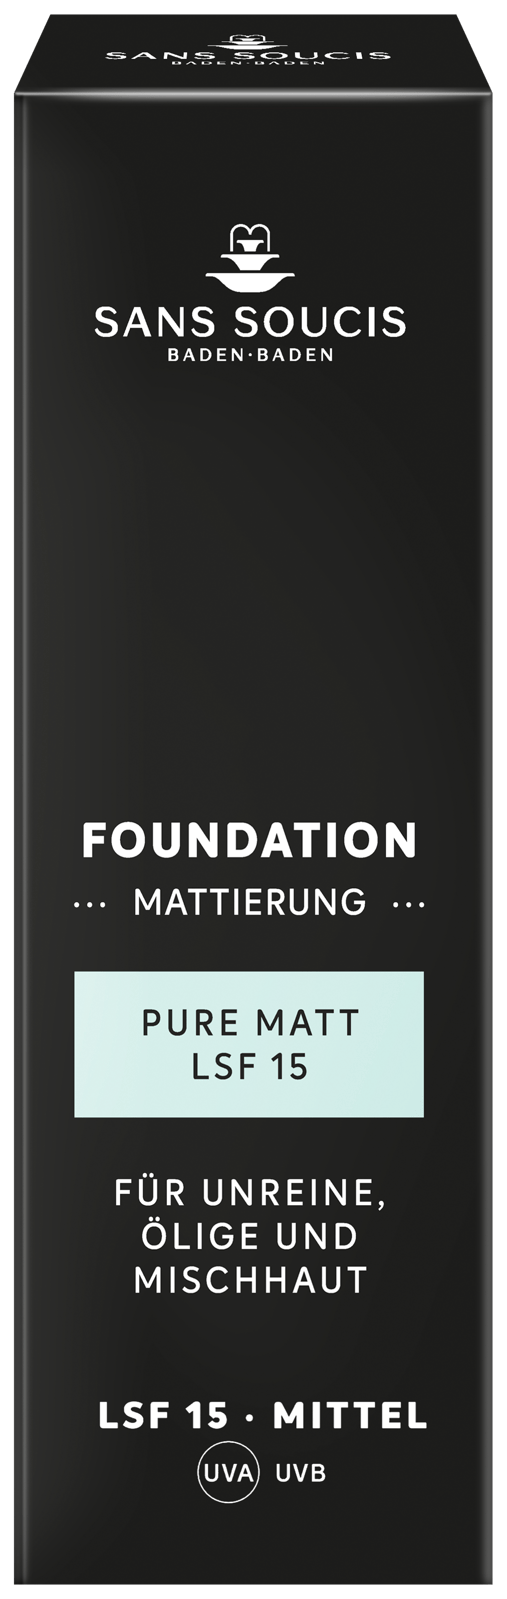 FOUNDATIONS • PURE MATT FOUNDATION LSF/SPF 15